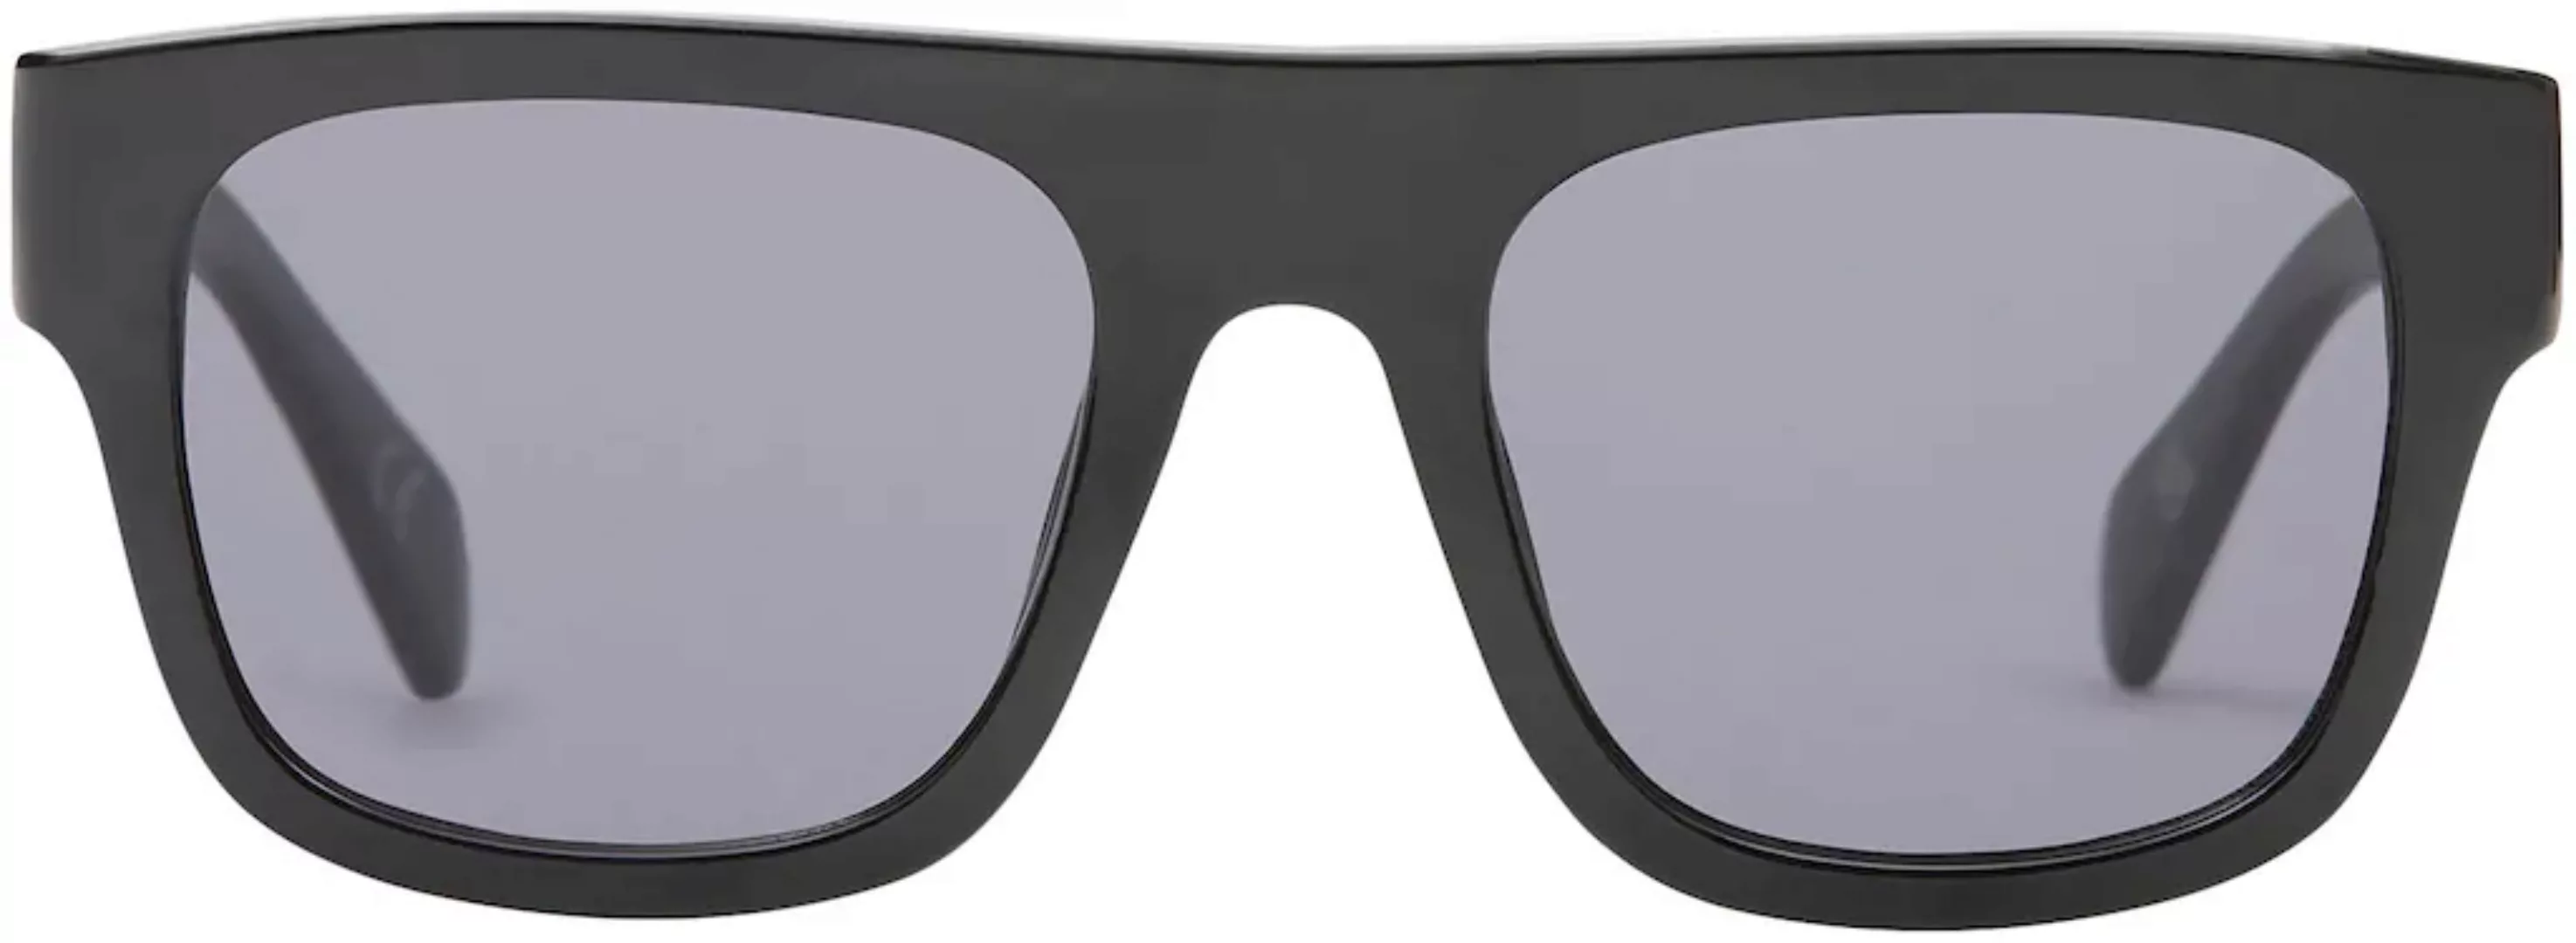 Vans Sonnenbrille "SQUARED OFF SHADES" günstig online kaufen